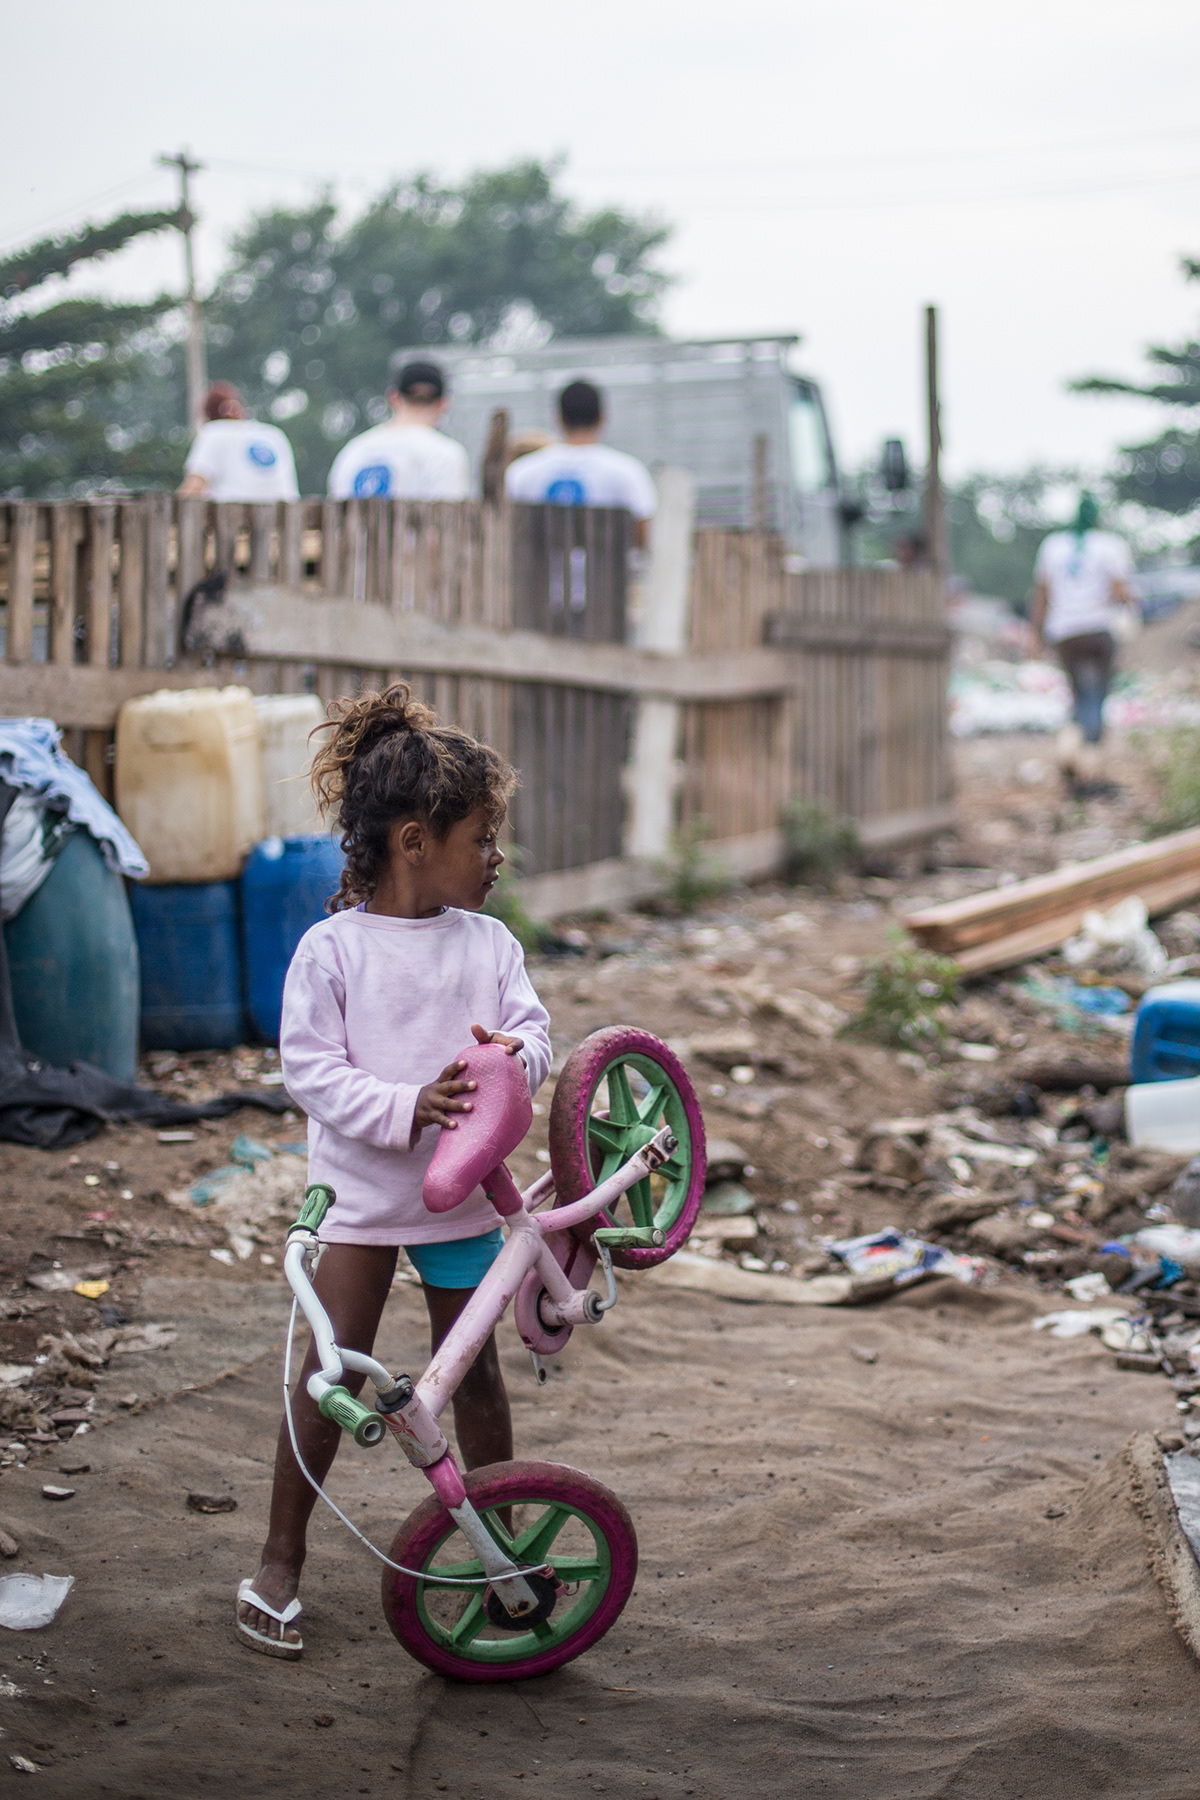 Brasil kids Poverty reallity Landscape city